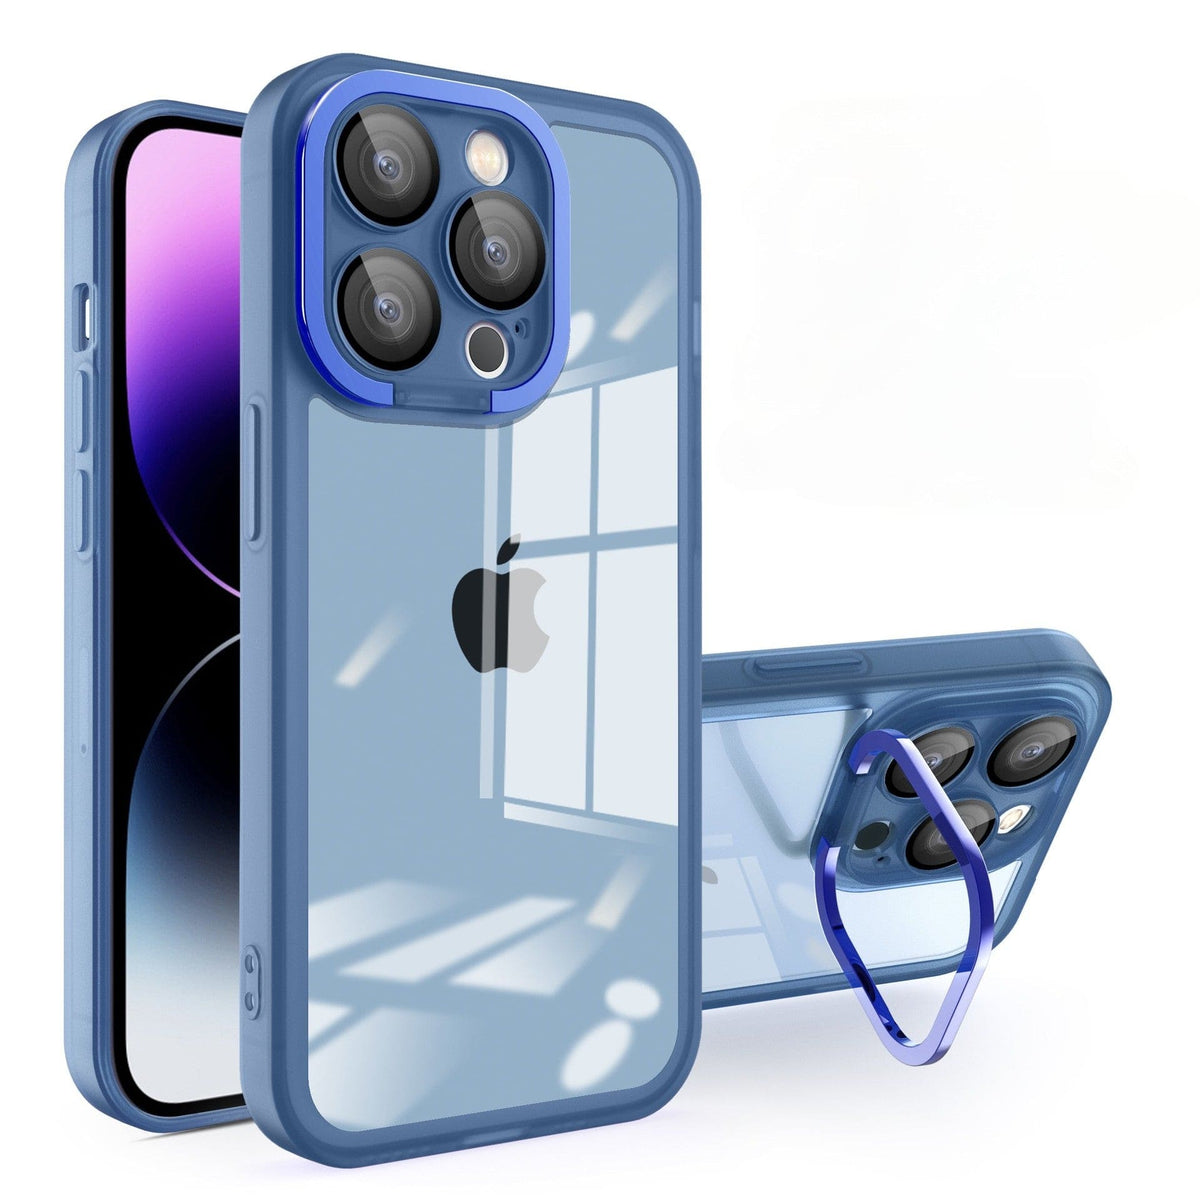 Husa protectie pentru Apple iPhone 12 Pro Electroplated cu suport pentru camera, 1.5 mm grosime, protectie camera, Albastru